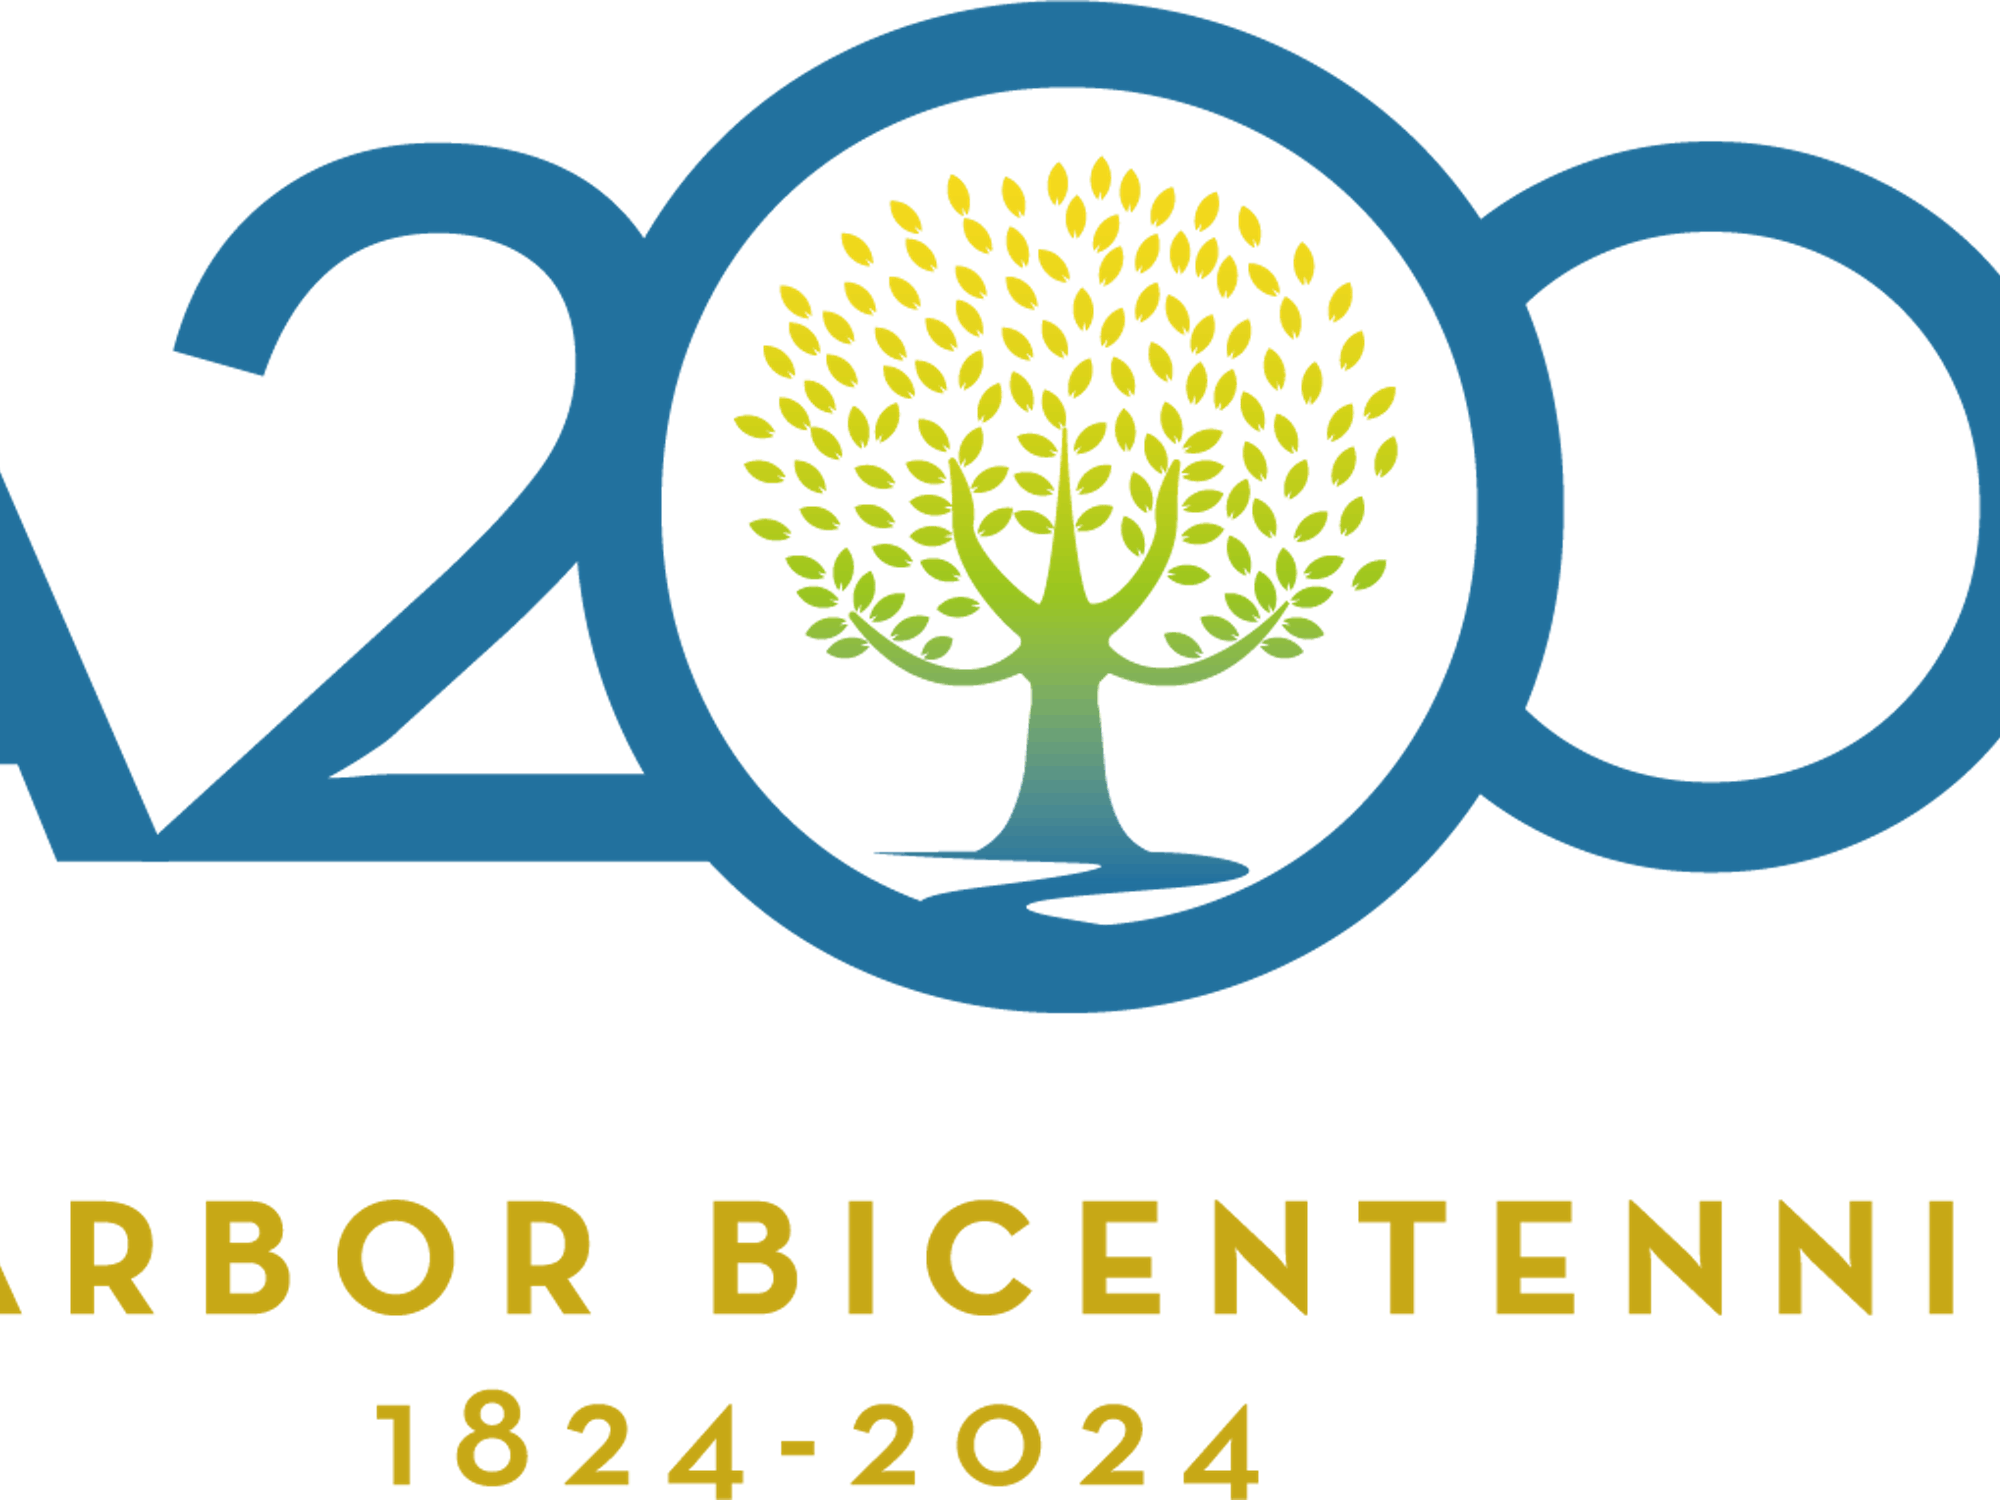 Ann Arbor Bicentennial logo